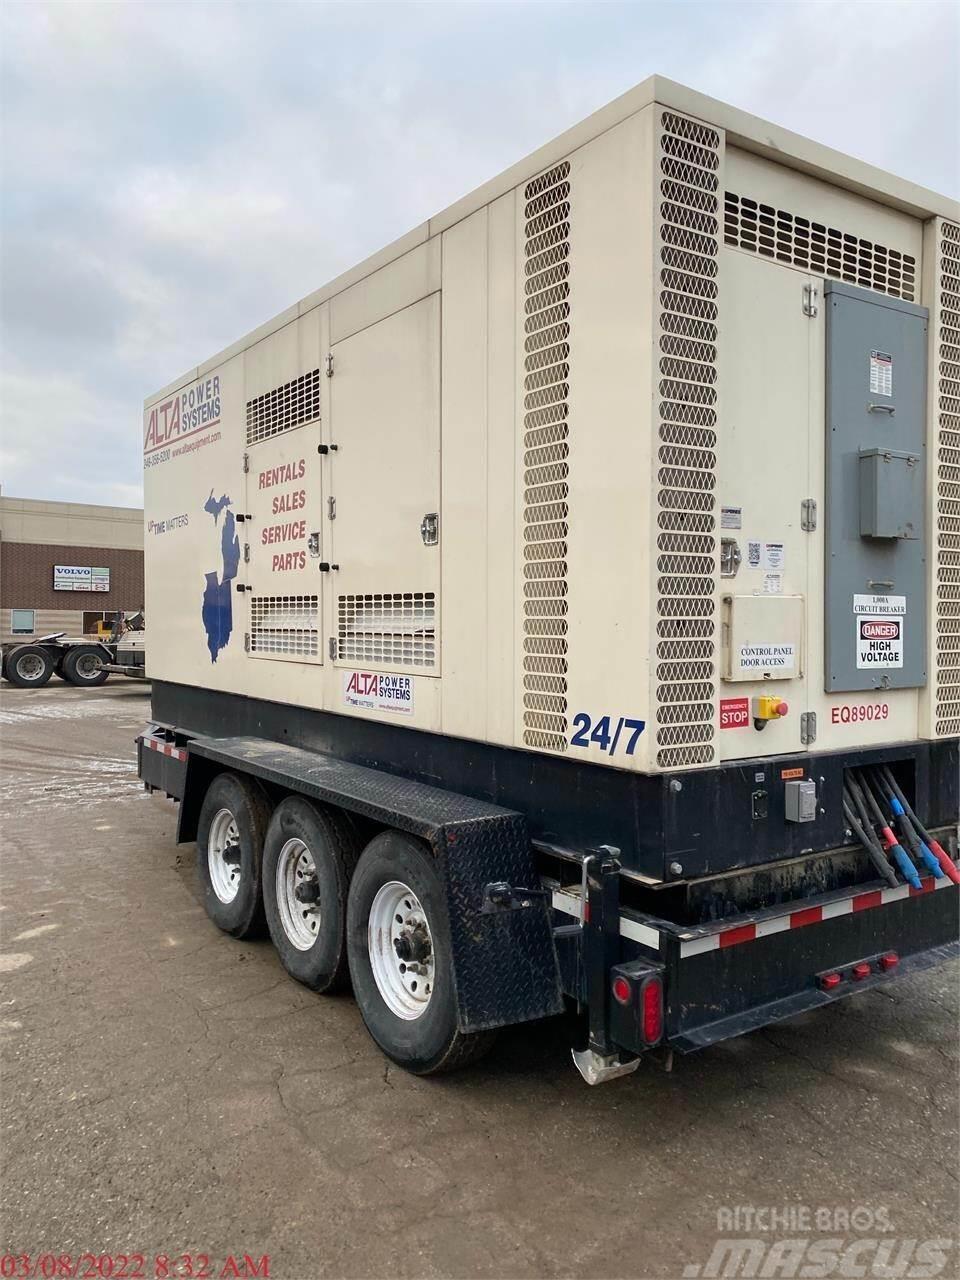  CK POWER 600 KW Övriga generatorer